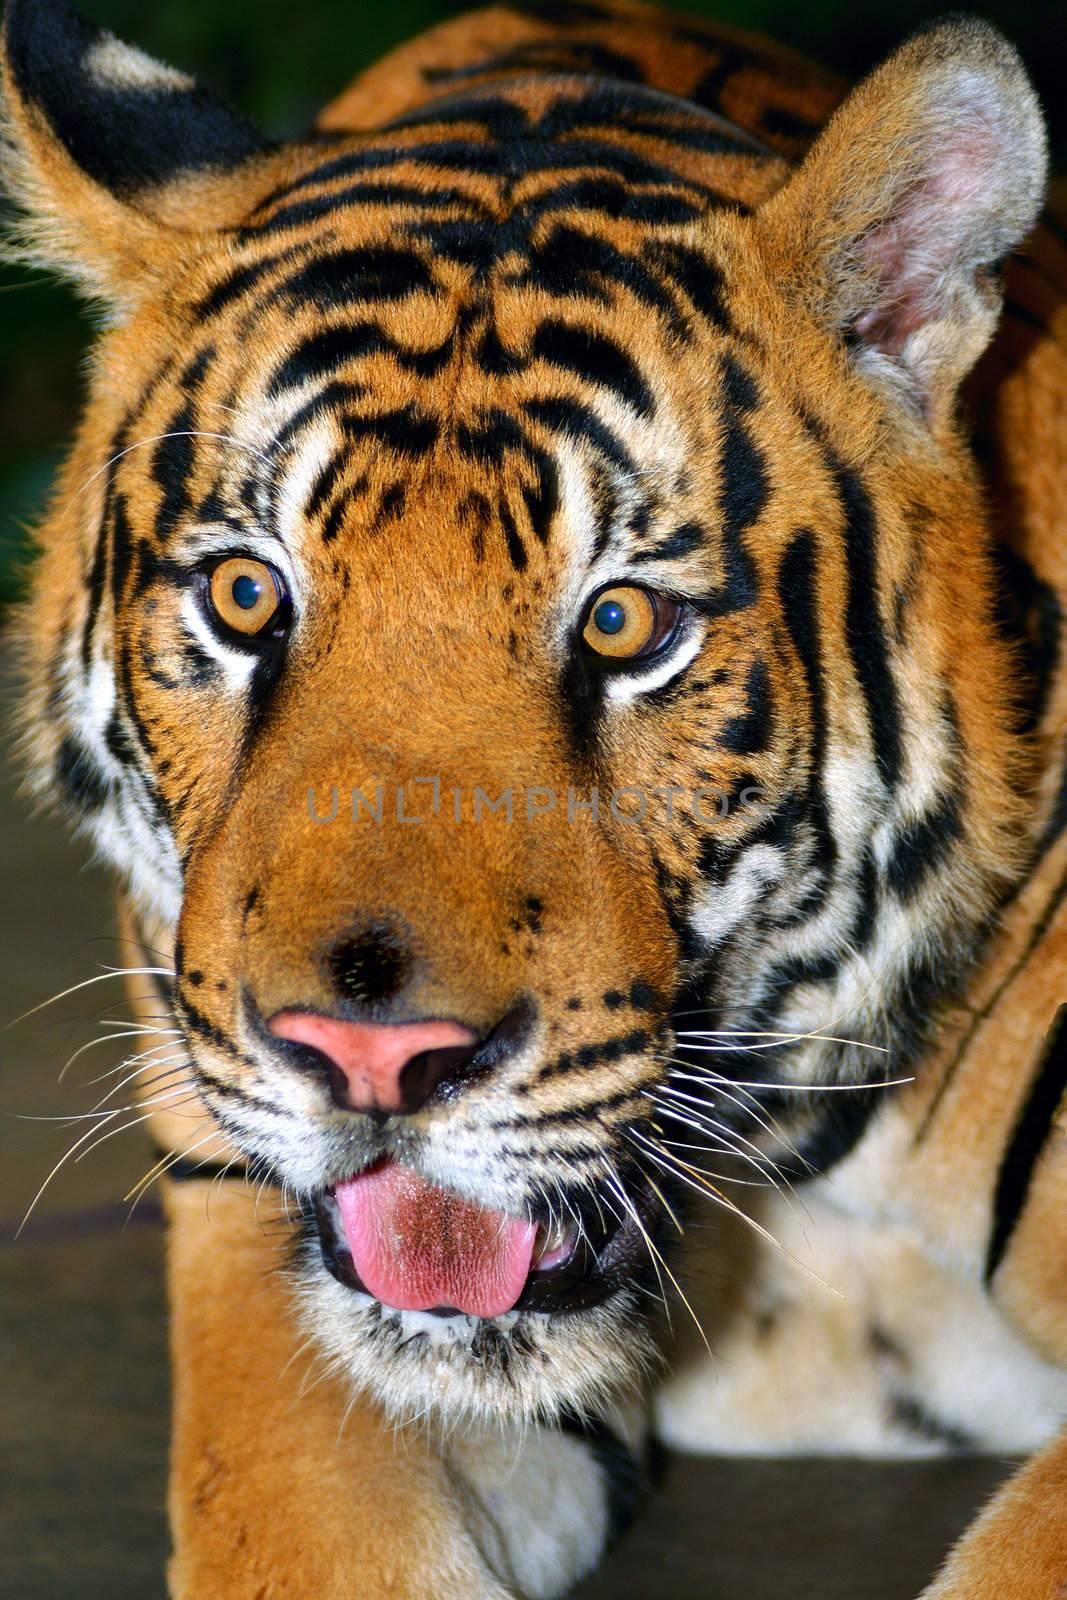 Tiger by pazham